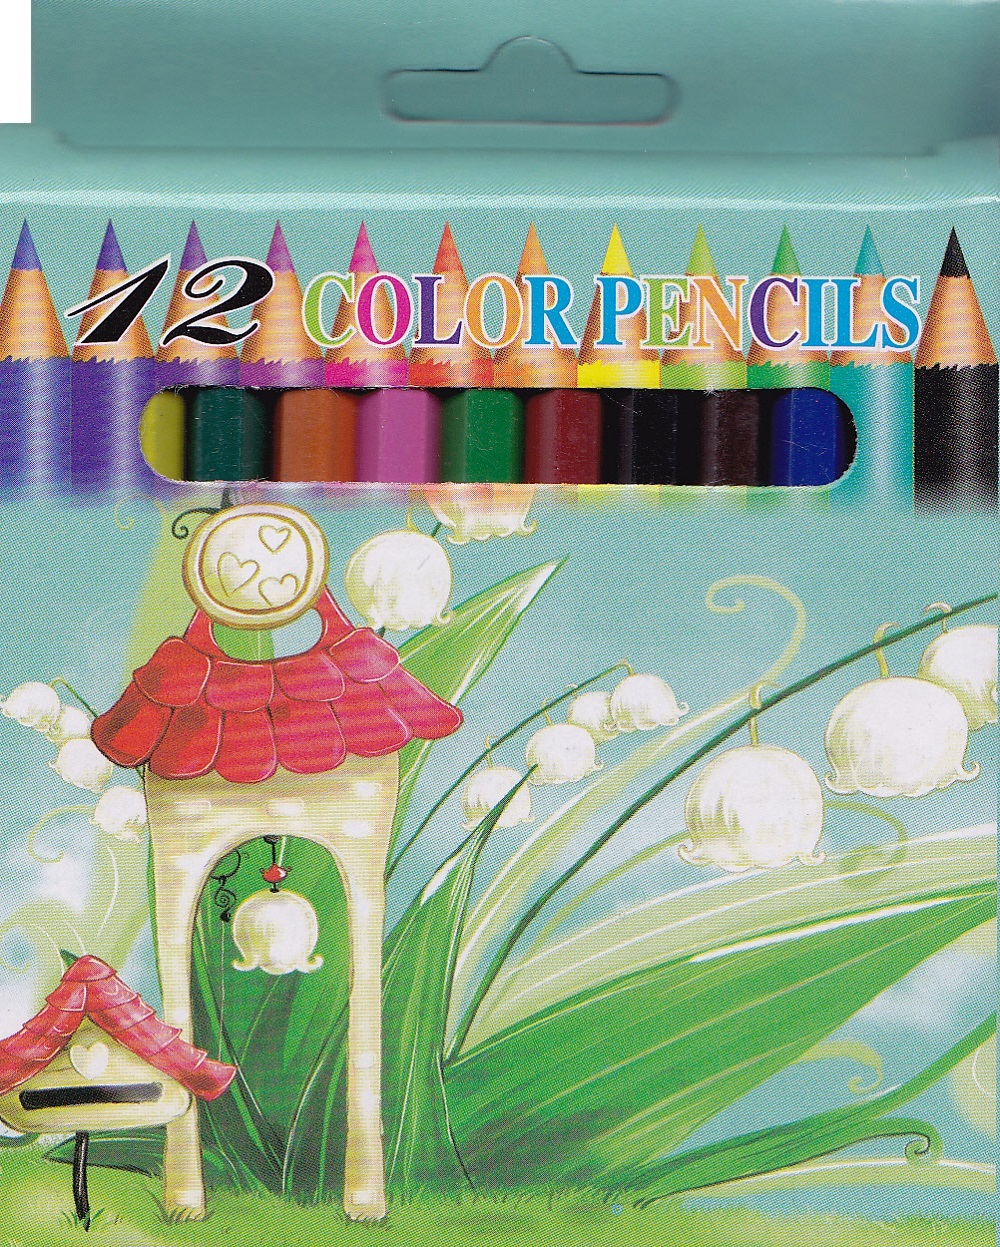 Pachet 2: 5 carti de colorat + 12 creioane colorate